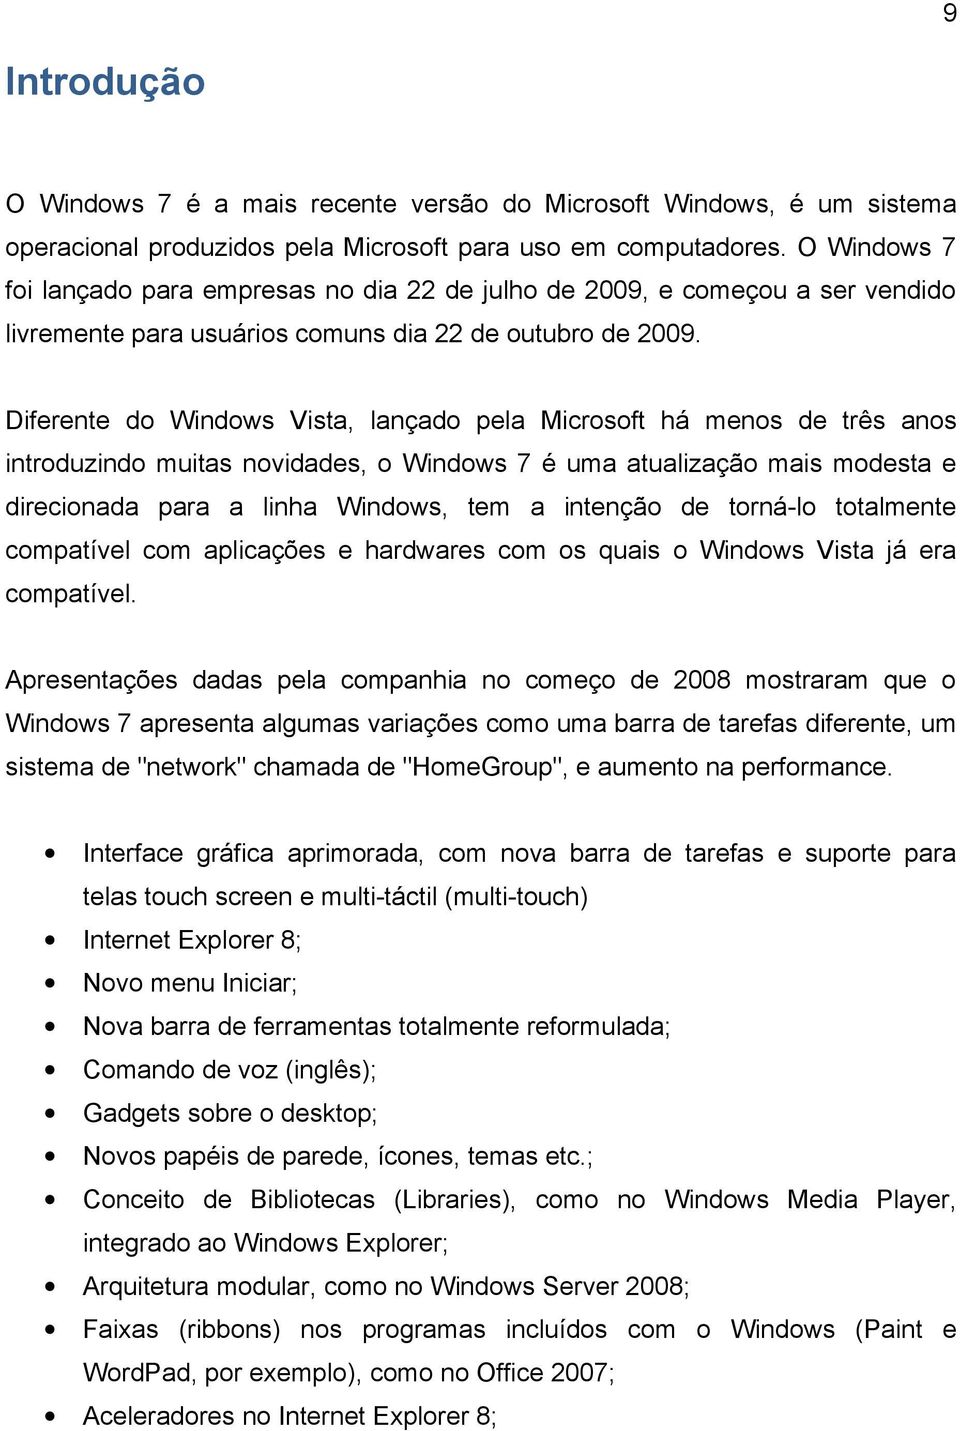 Diferente do Windows Vista, lançado pela Microsoft há menos de três anos introduzindo muitas novidades, o Windows 7 é uma atualização mais modesta e direcionada para a linha Windows, tem a intenção